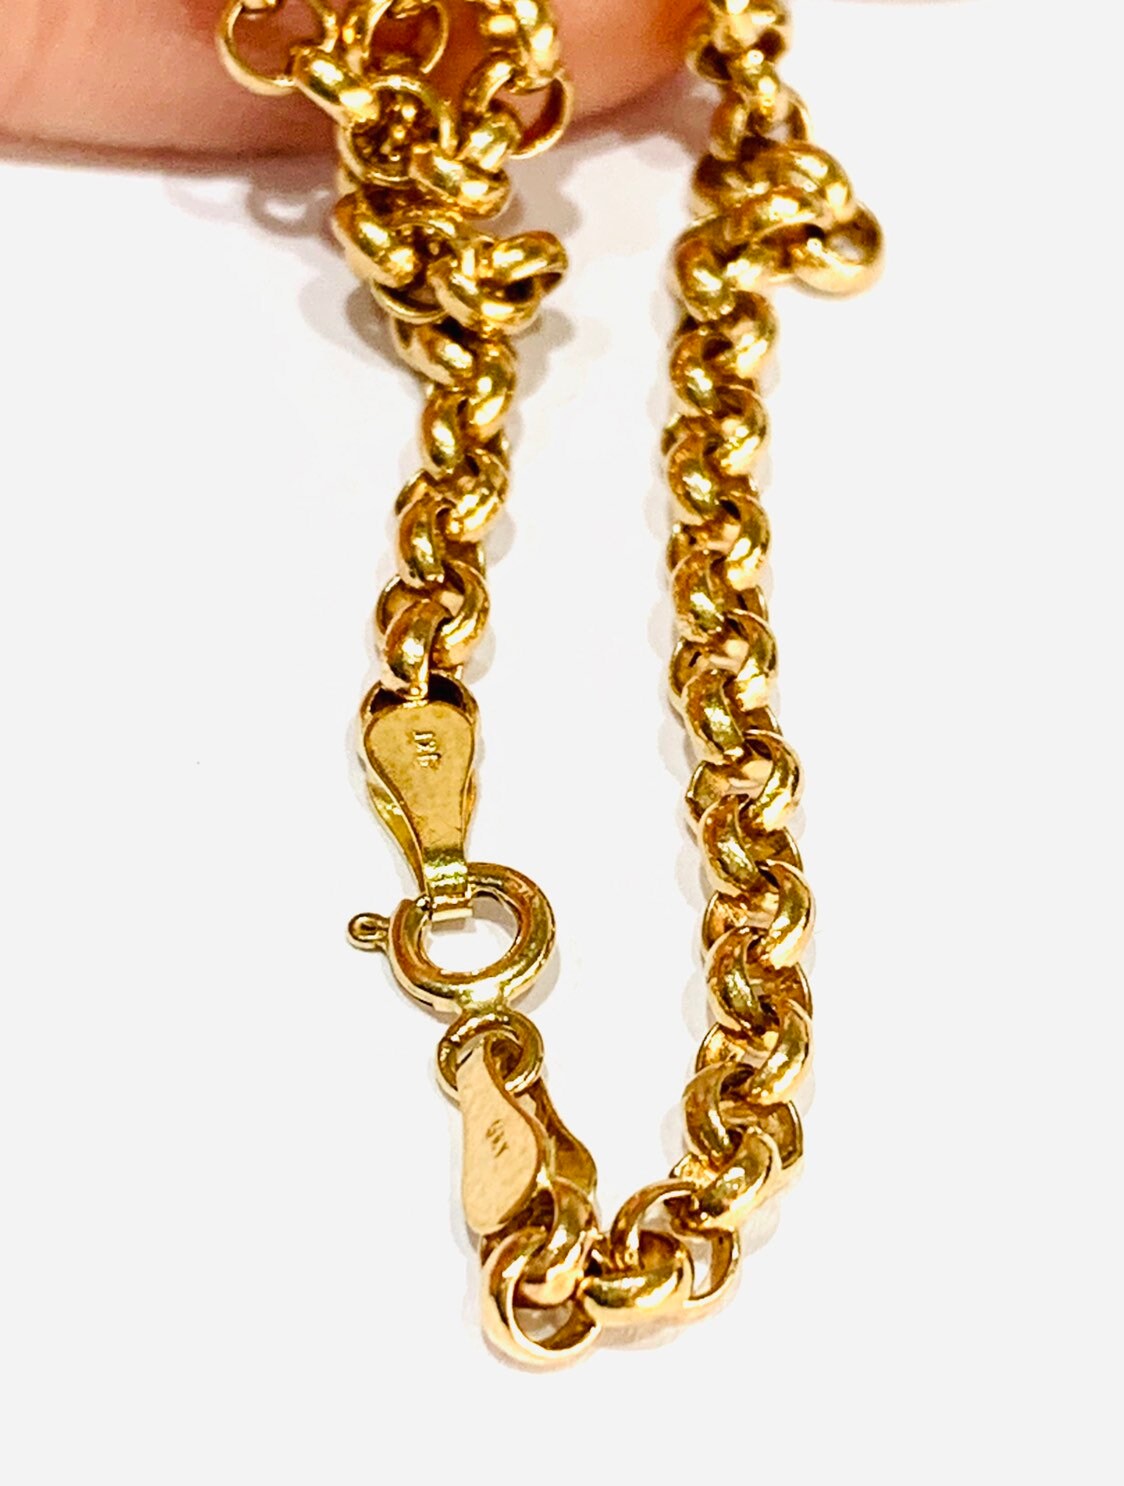 Stunning vintage 9ct yellow gold 18 inch Belcher chain - fully hallmarked